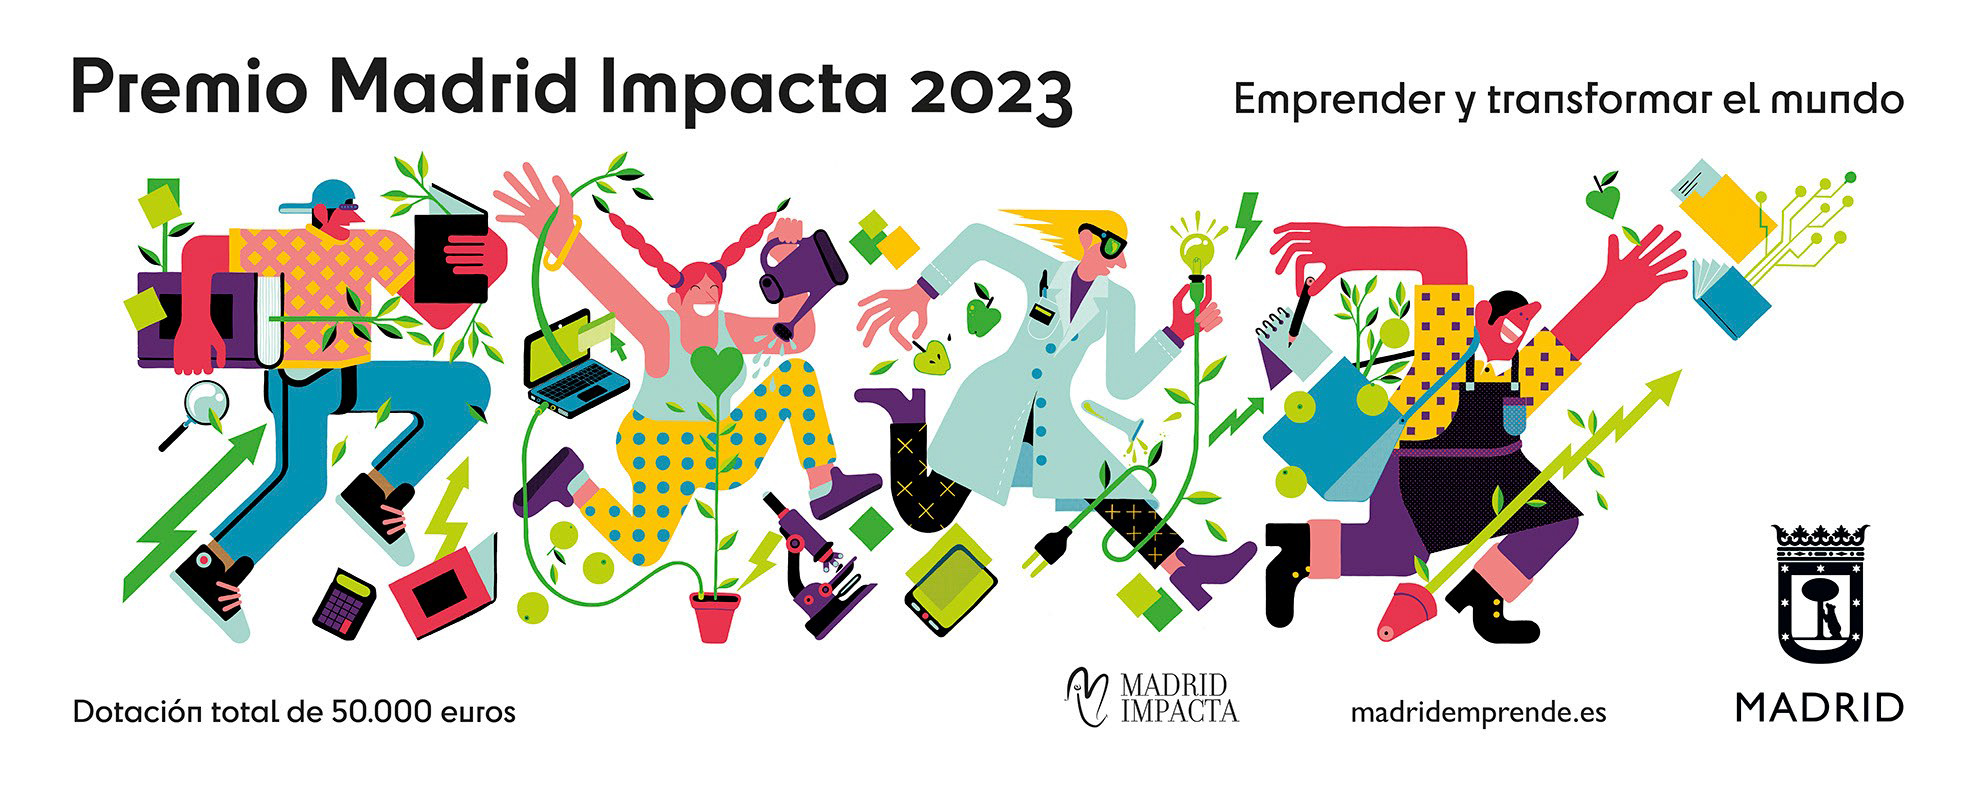 Daniel_M_2023_Ayuntamiento-de-Madrid_Premios-Madrid-Impacta00